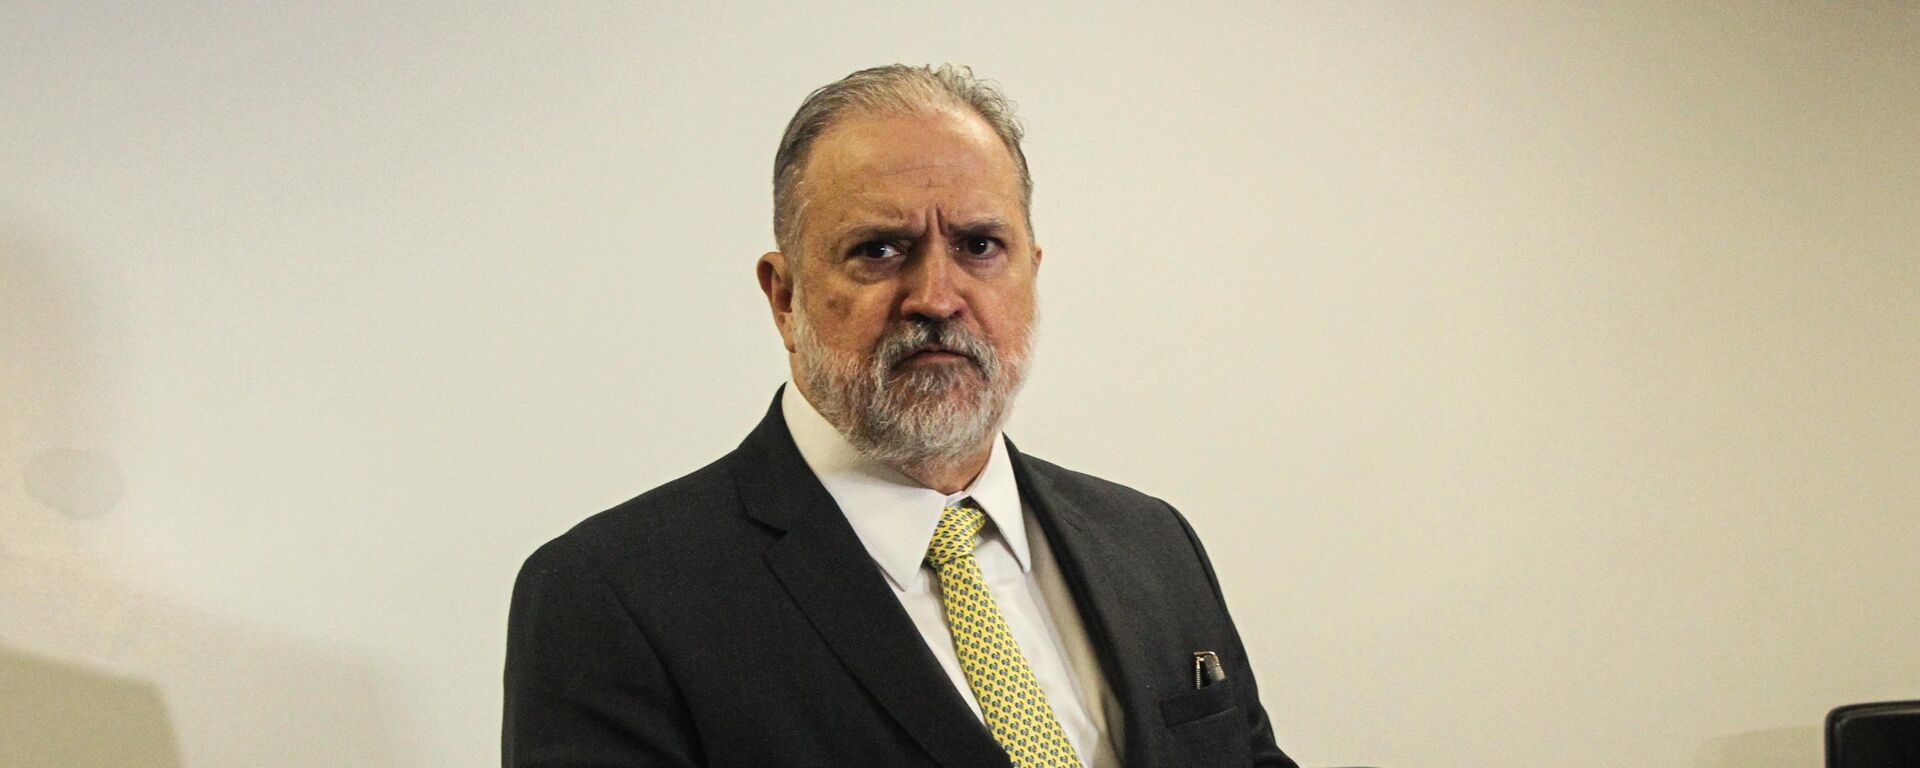 Augusto Aras, procurador-geral da República, participa de reunião com membros do Ministério Público Federal (MPF) sobre violações de direitos indígenas, na sede do MPF no Pará, em Belém, em 6 de maio de 2022 - Sputnik Brasil, 1920, 21.07.2022